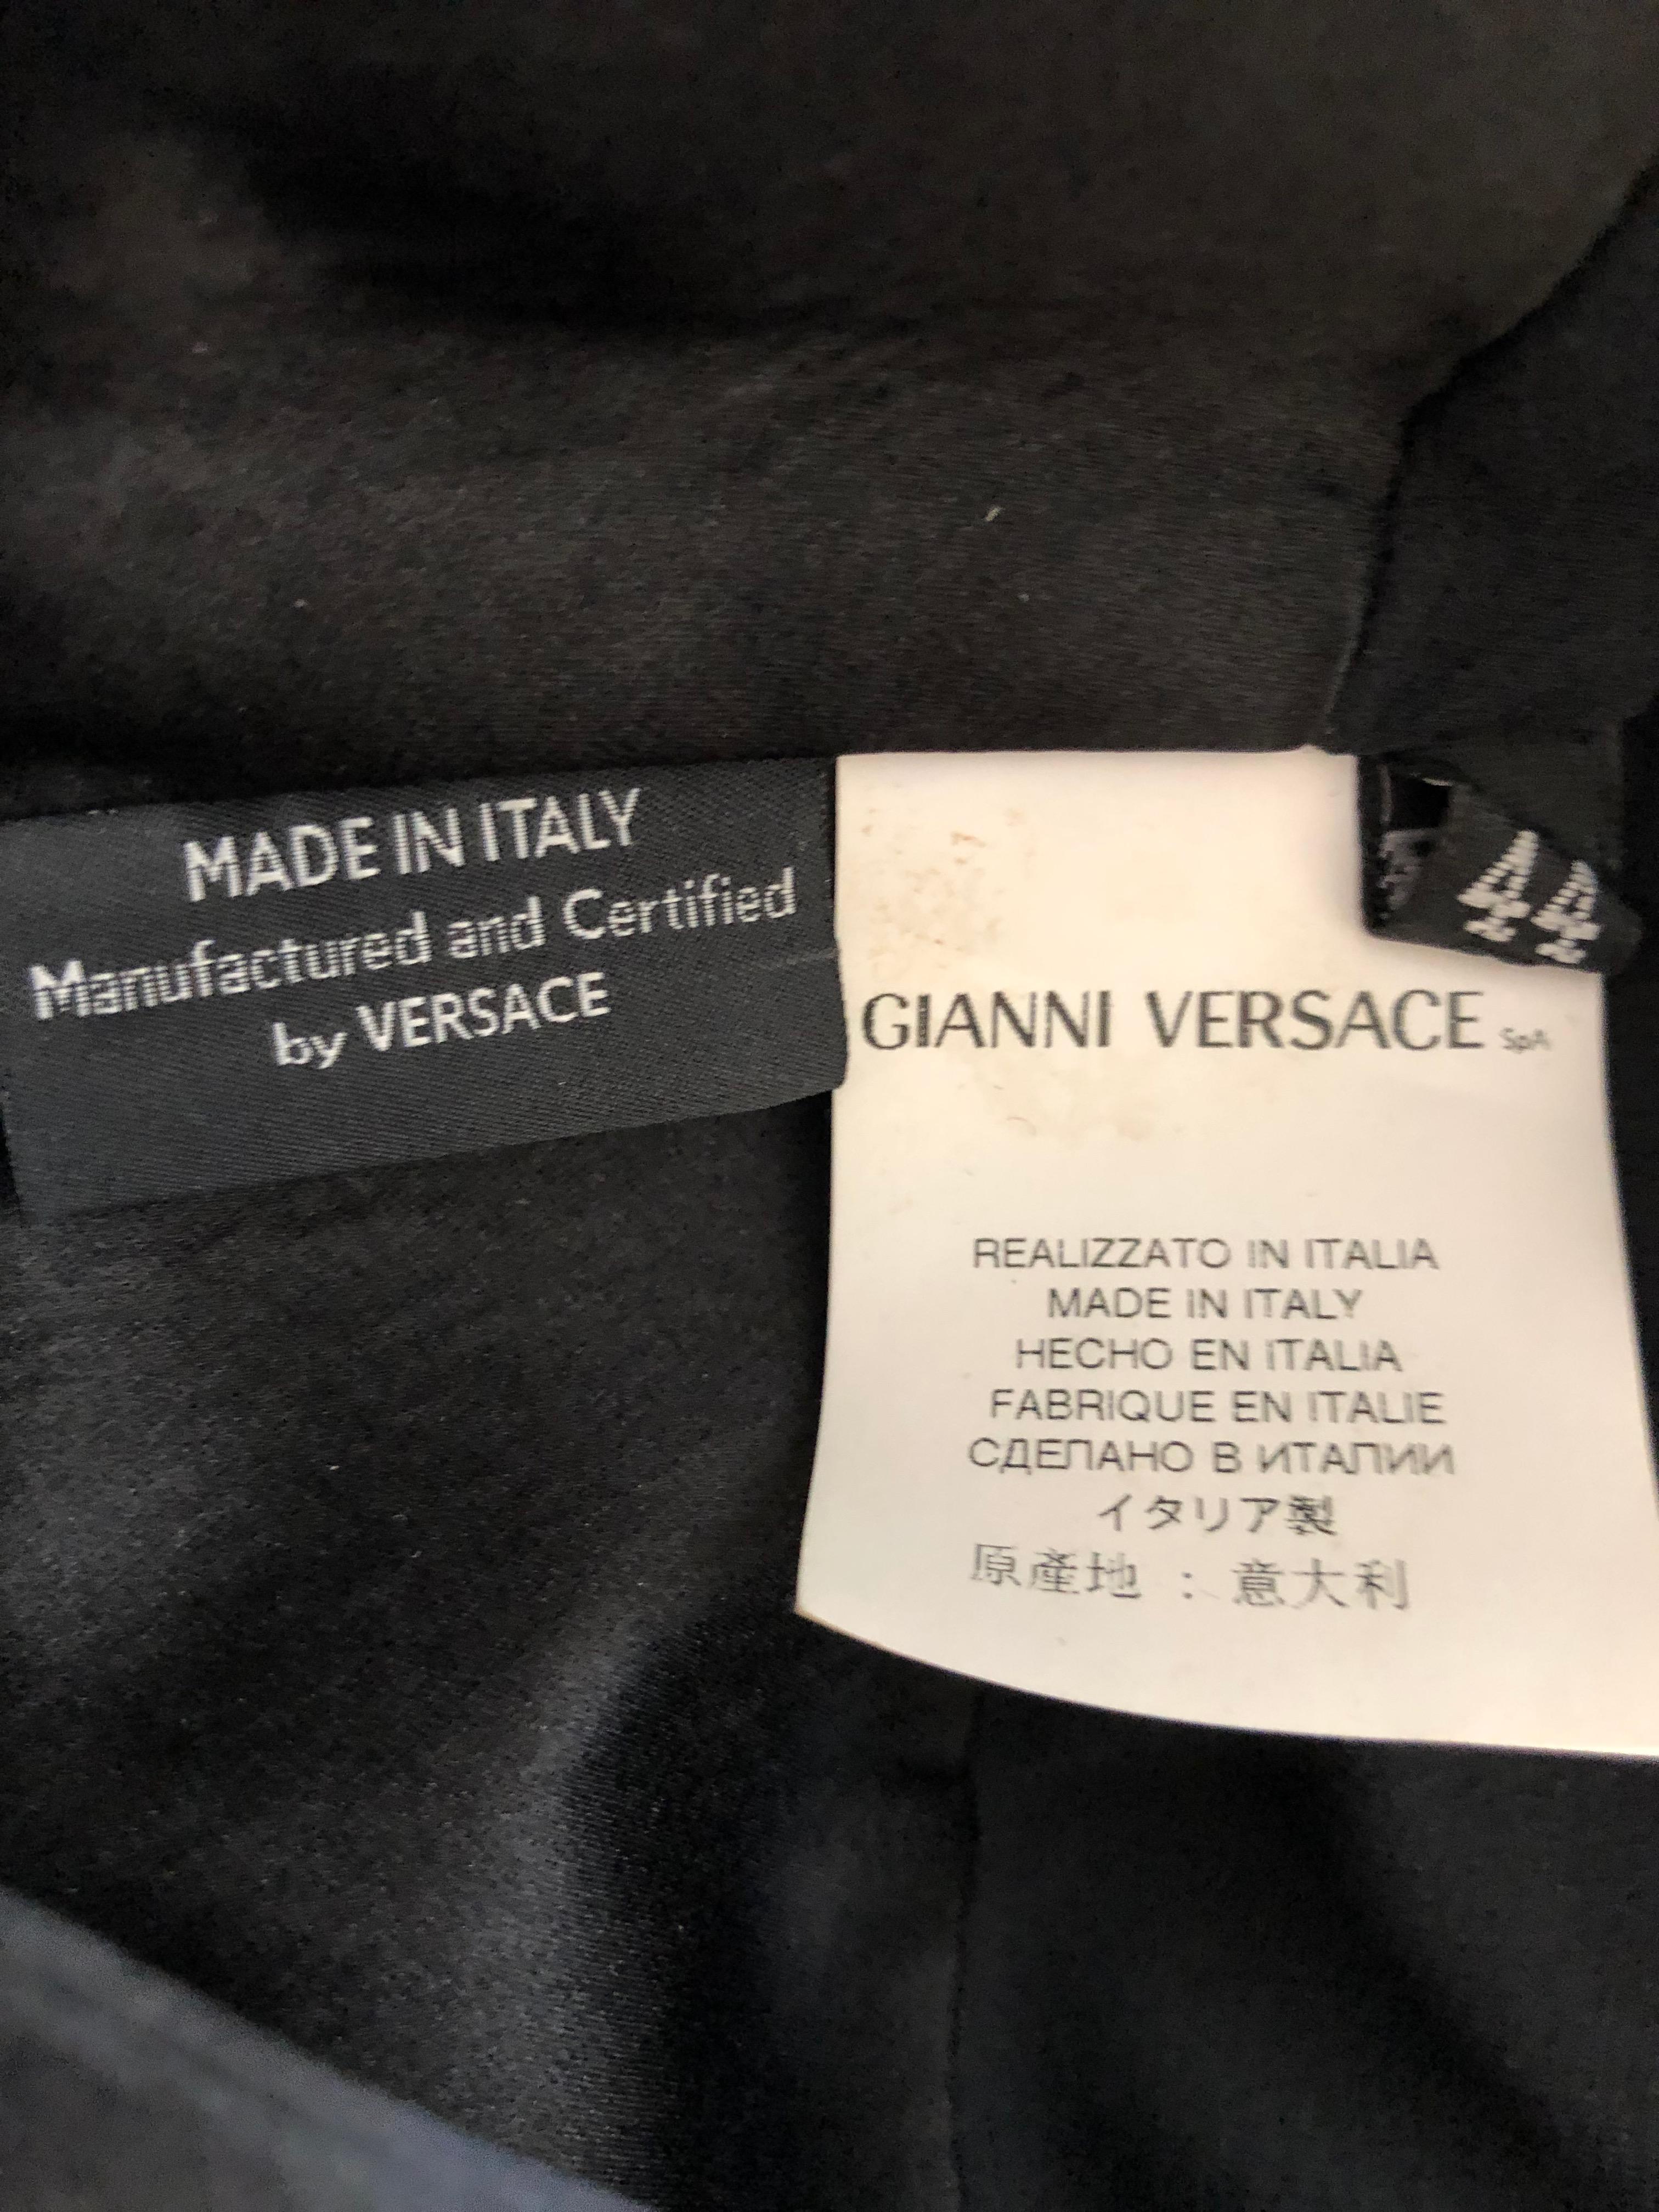  Versace Sequin and Bead Embellished Vintage Black Evening Dress For Sale 6